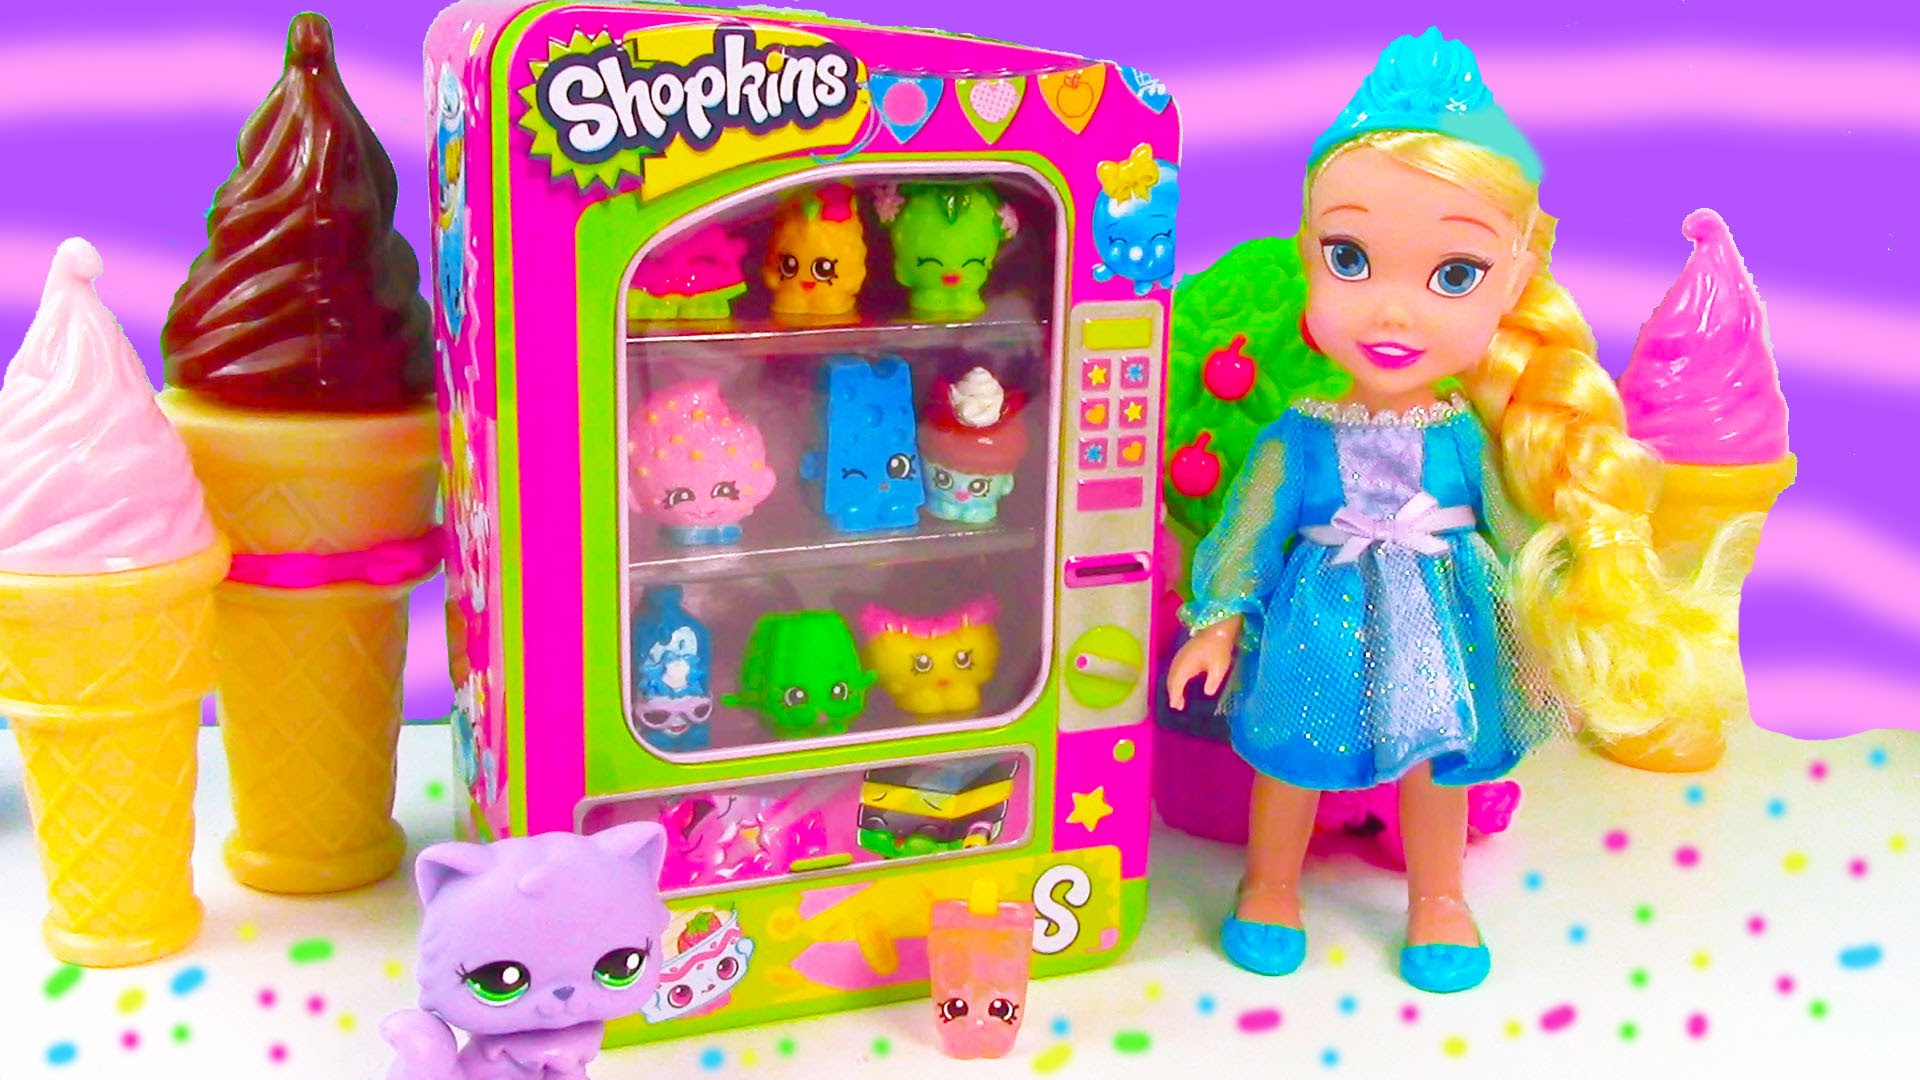 Lps Shopkins Vending Machine Playset Disney Frozen Toddler Queen Elsa